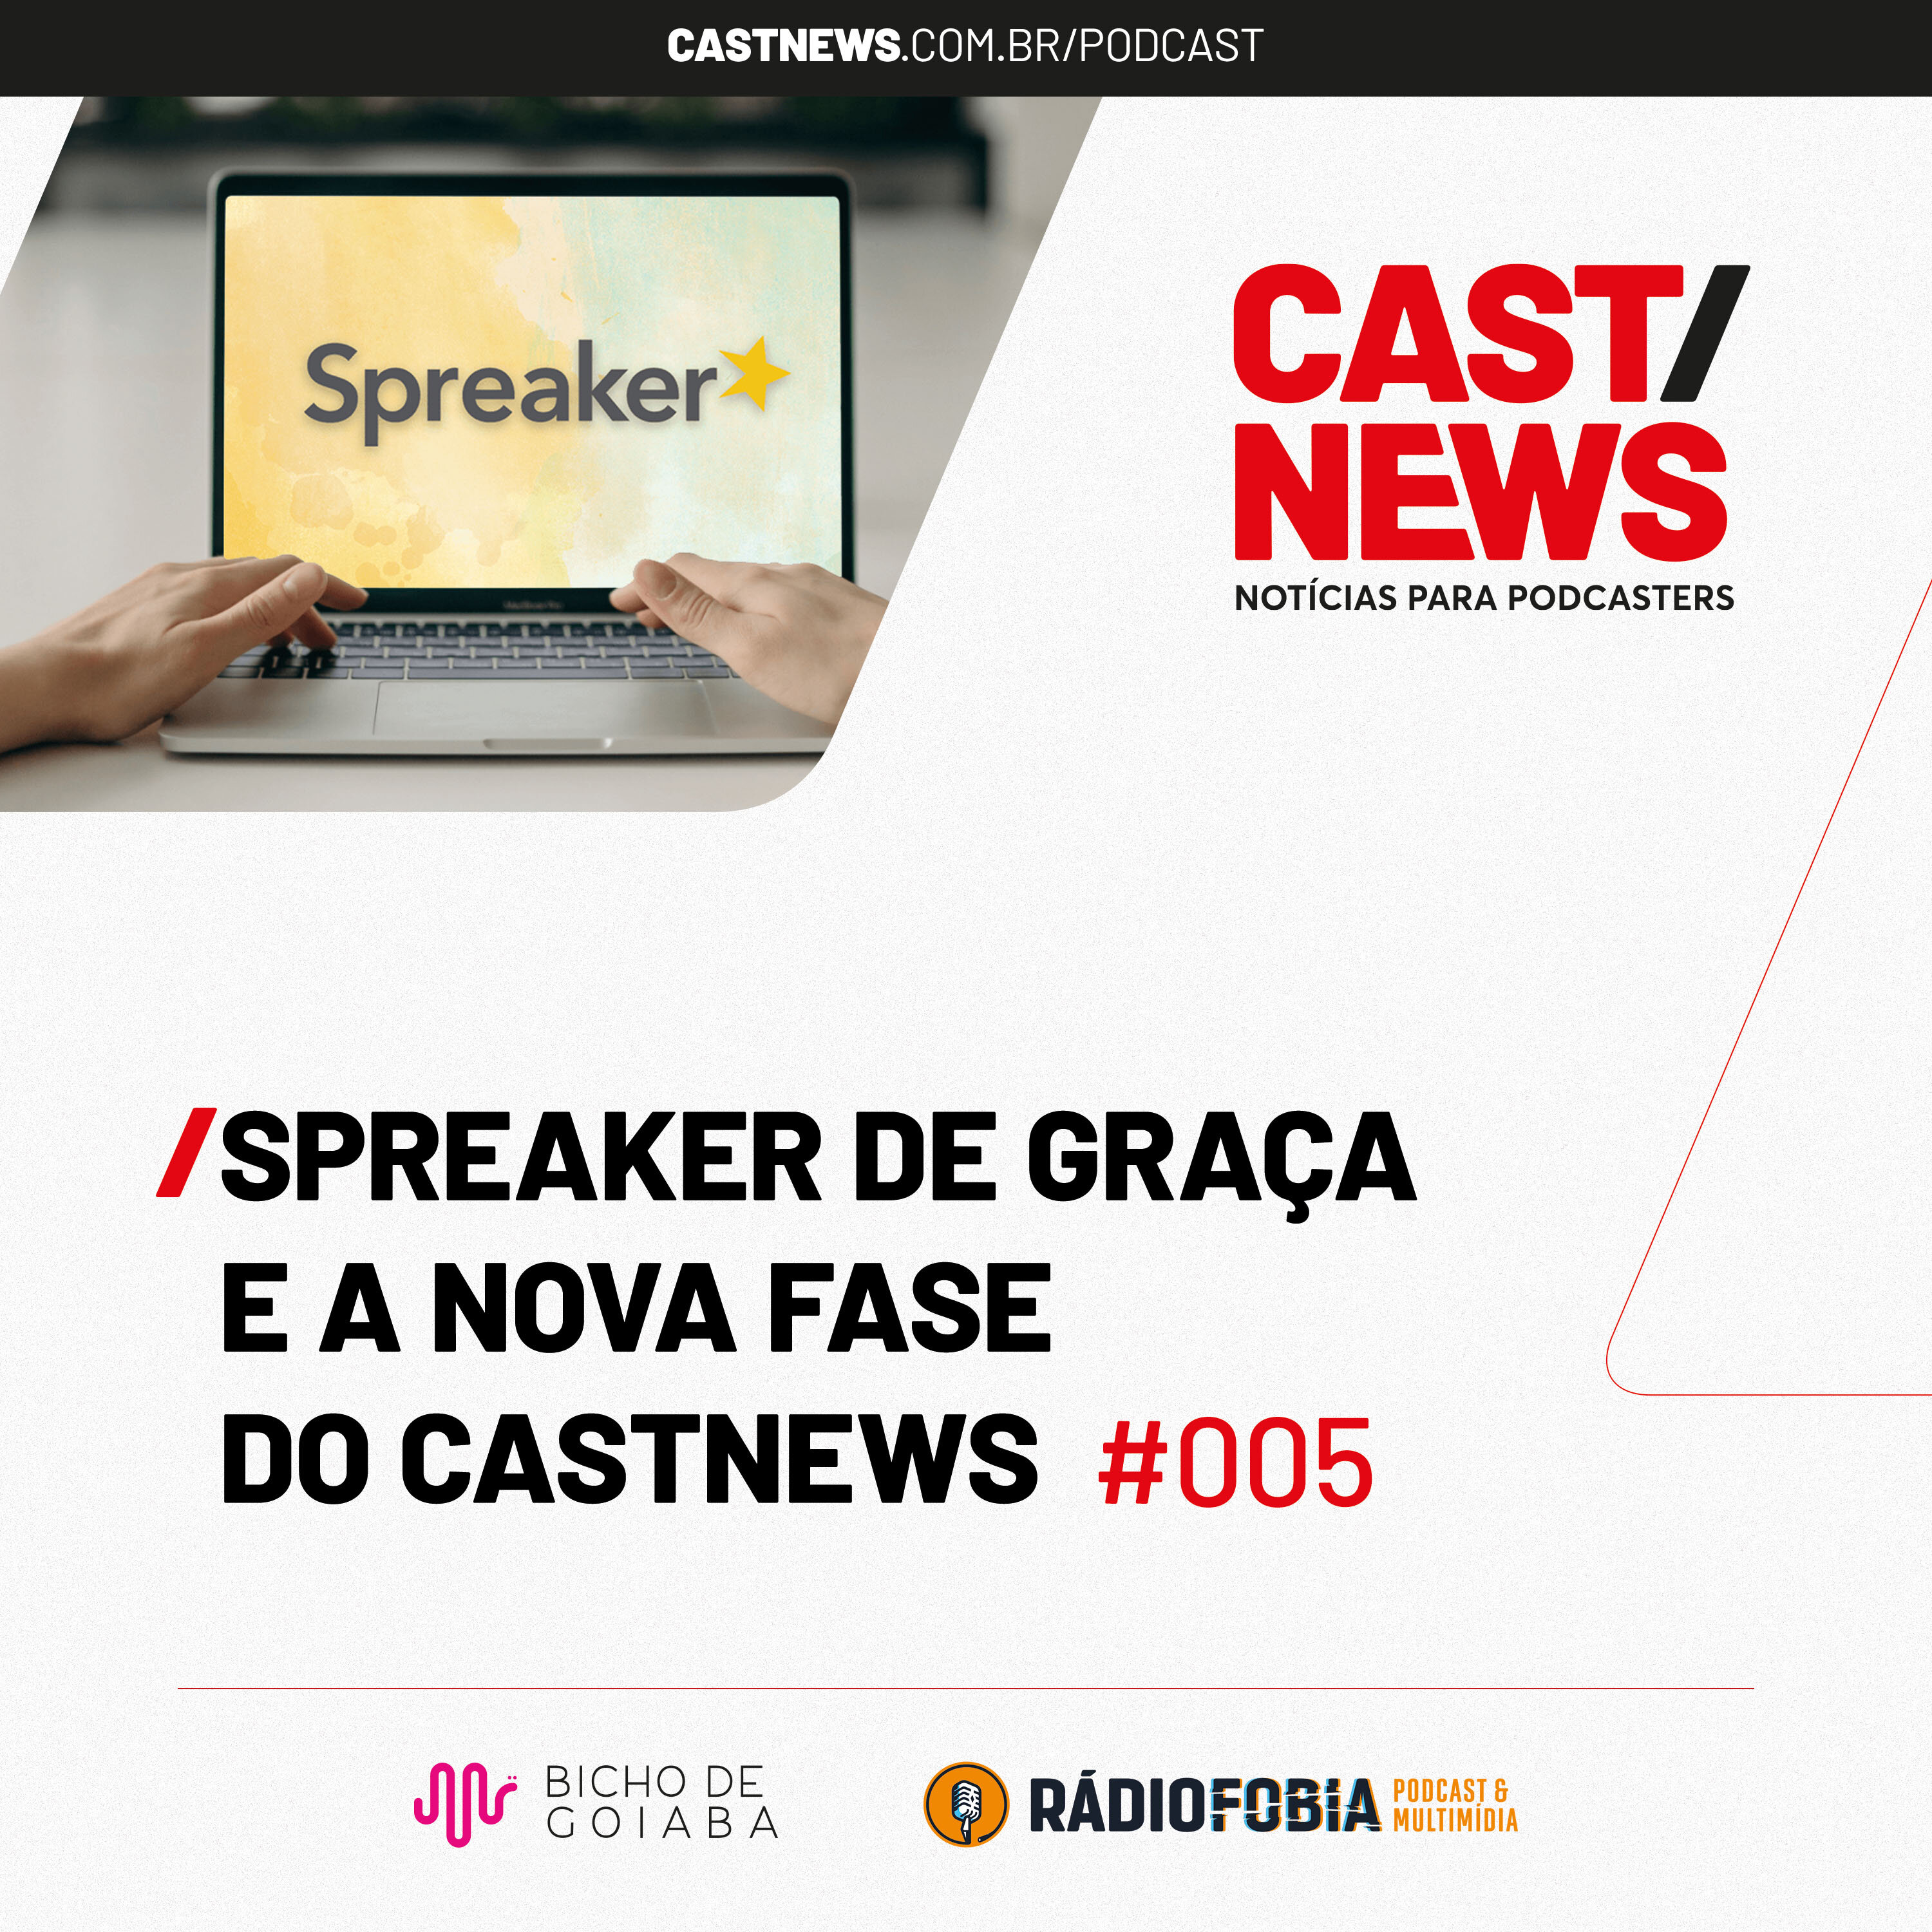 CASTNEWS #005 - Spreaker de graça e a nova fase do Castnews